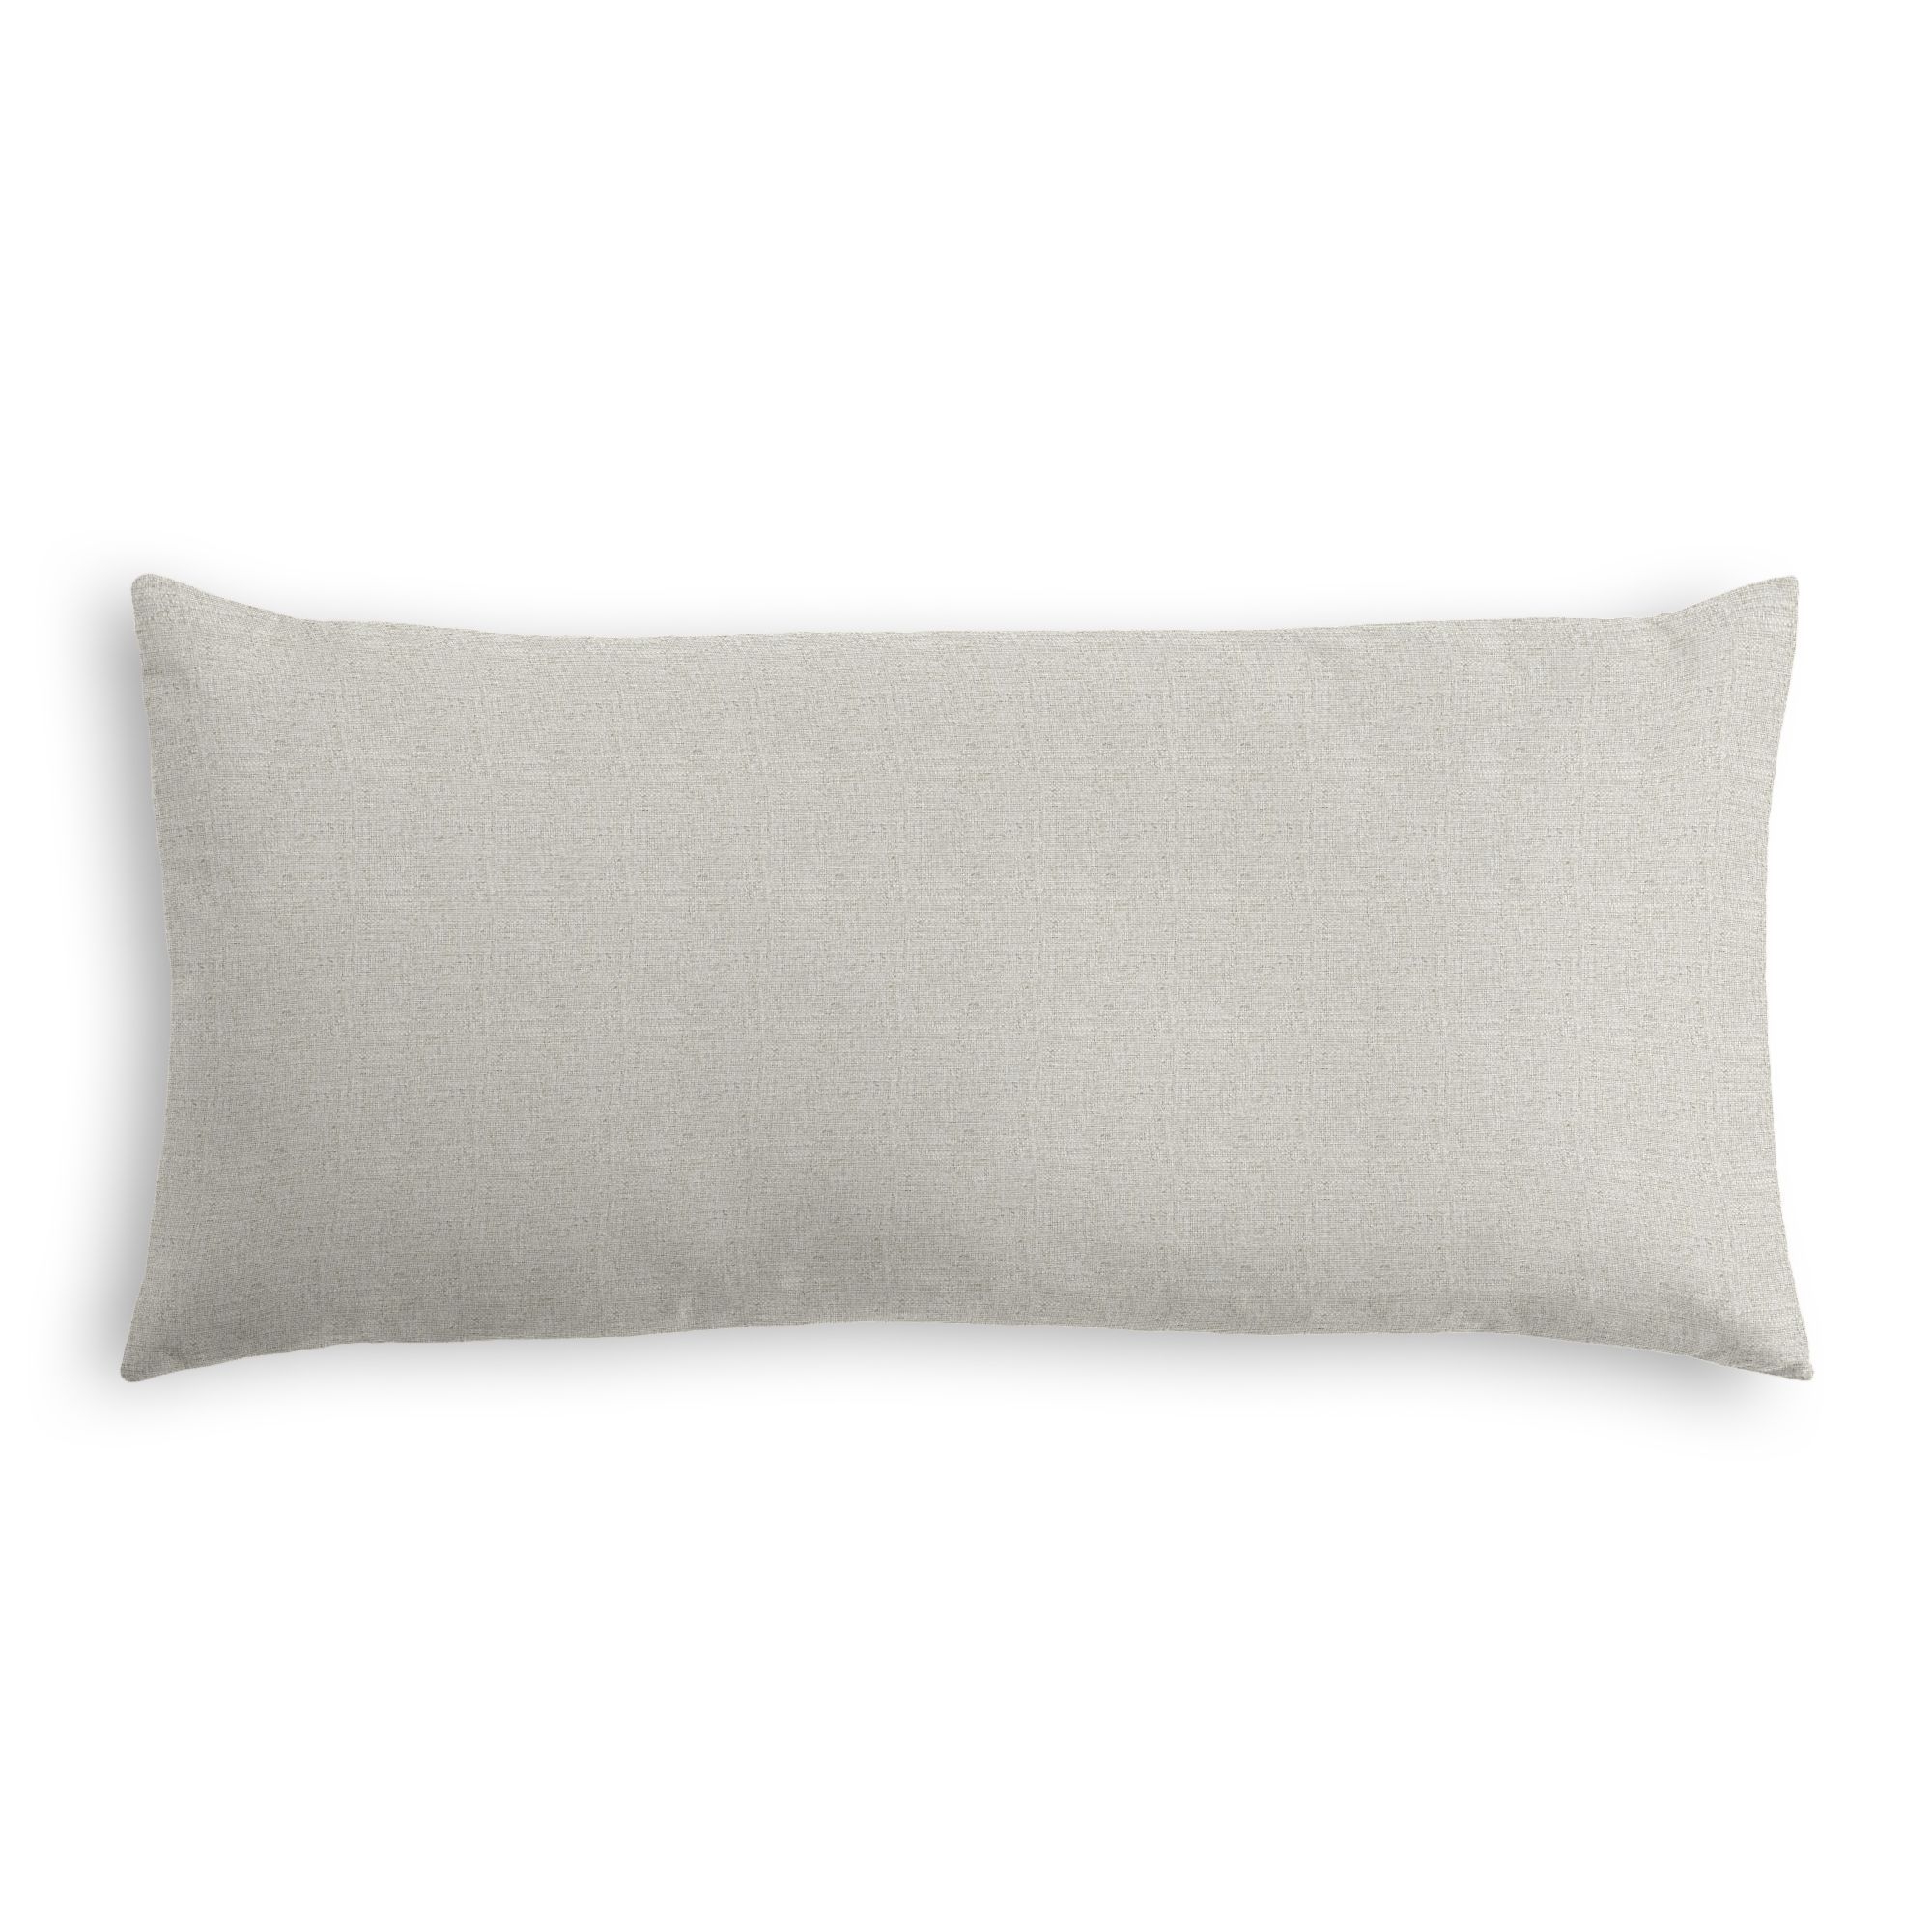 Classic Linen Lumbar Pillow, Sandy Tan, 18" x 12" - Image 0